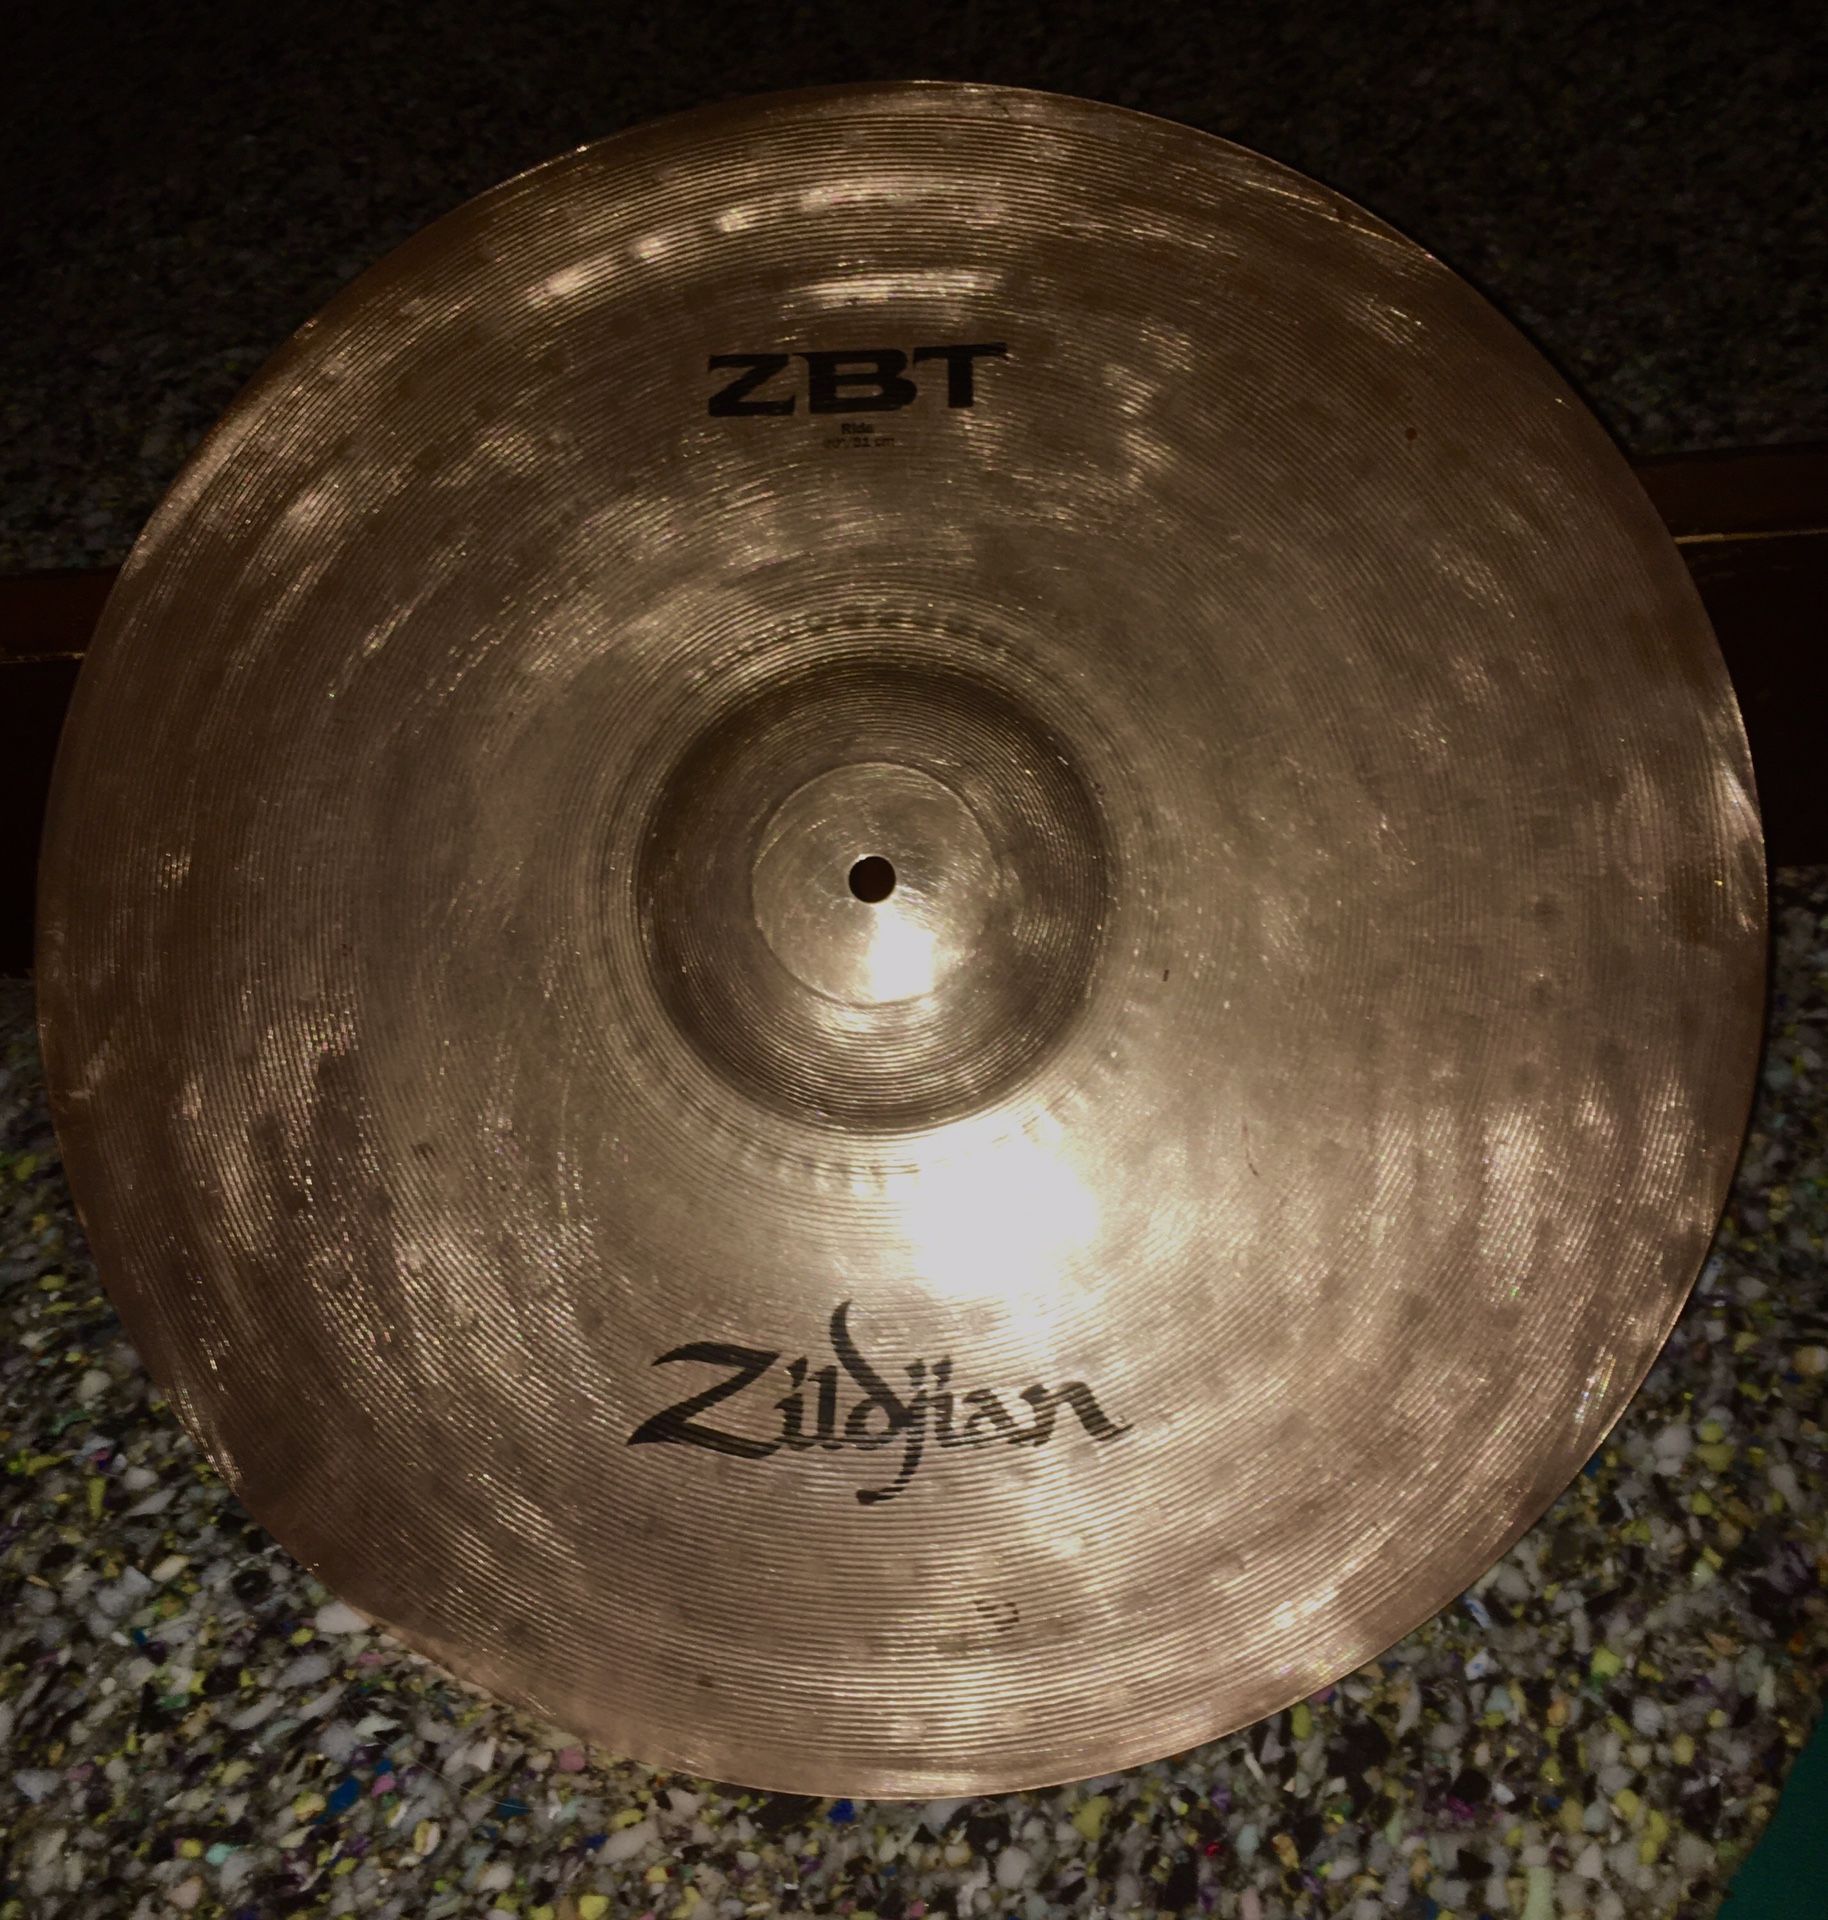 20” Ride Zildjian Cymbal